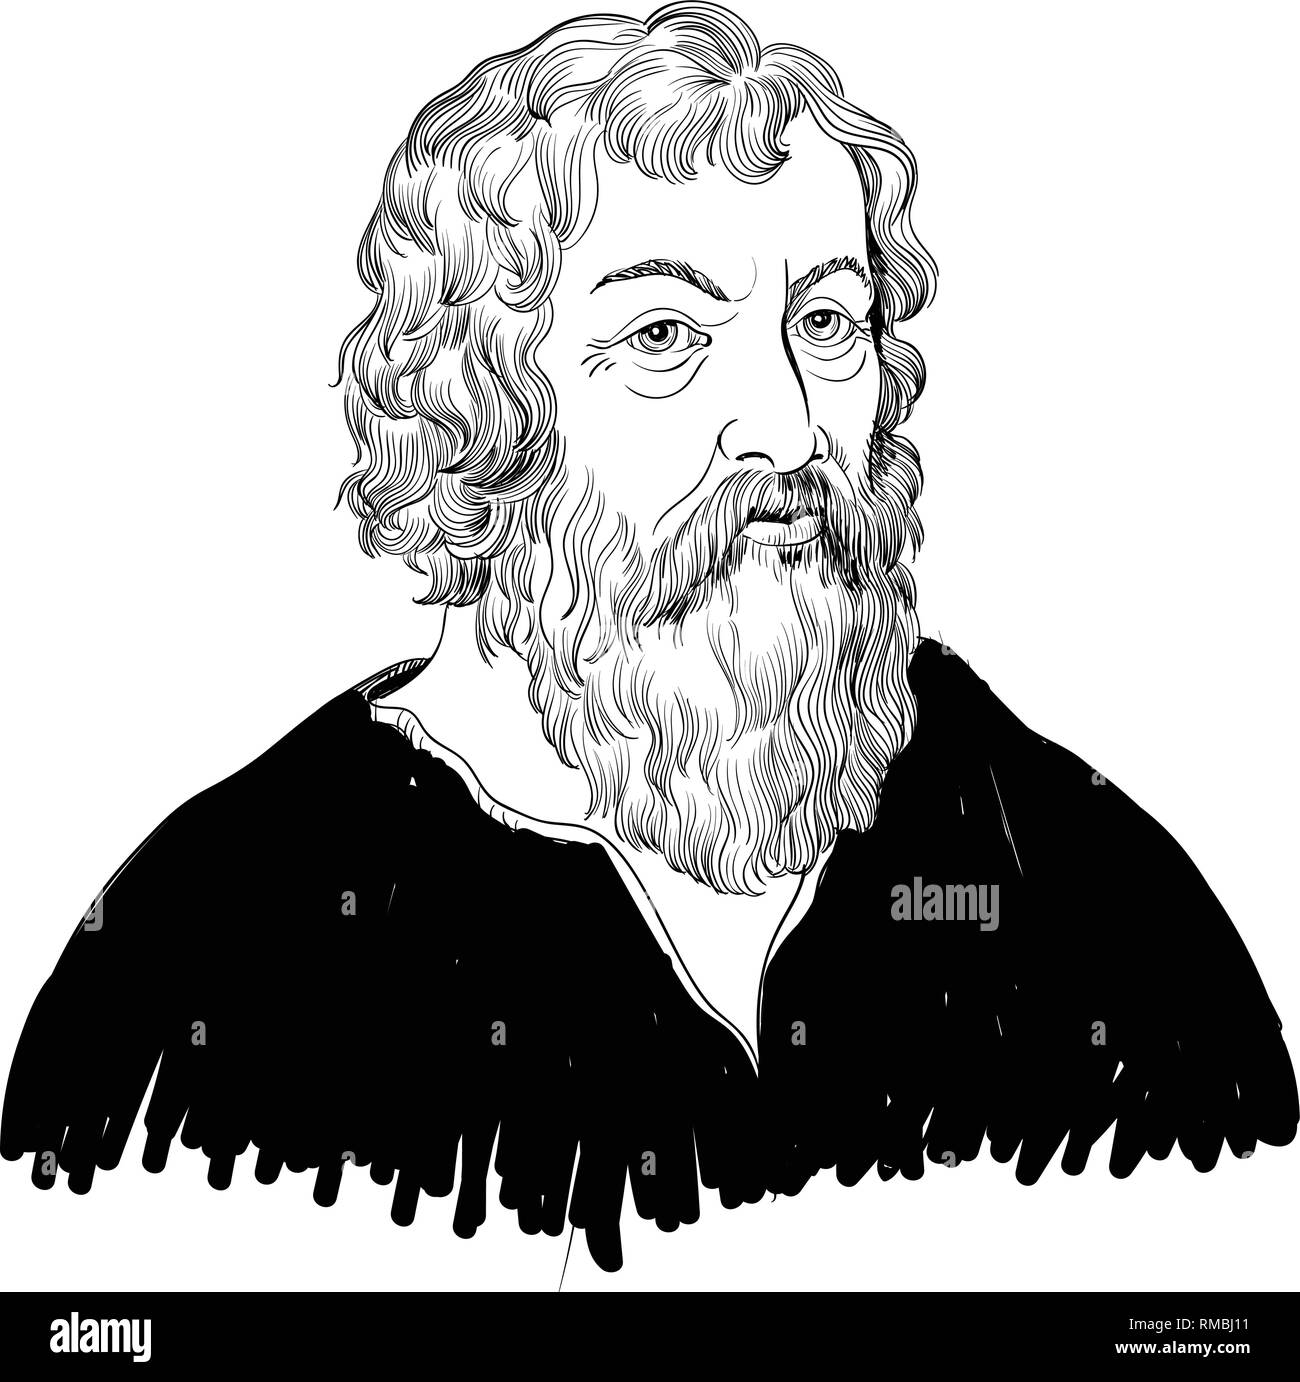 Hipócrates retrato en line art illustration. Fue un filósofo griego y el  médico que ha sido llamado 